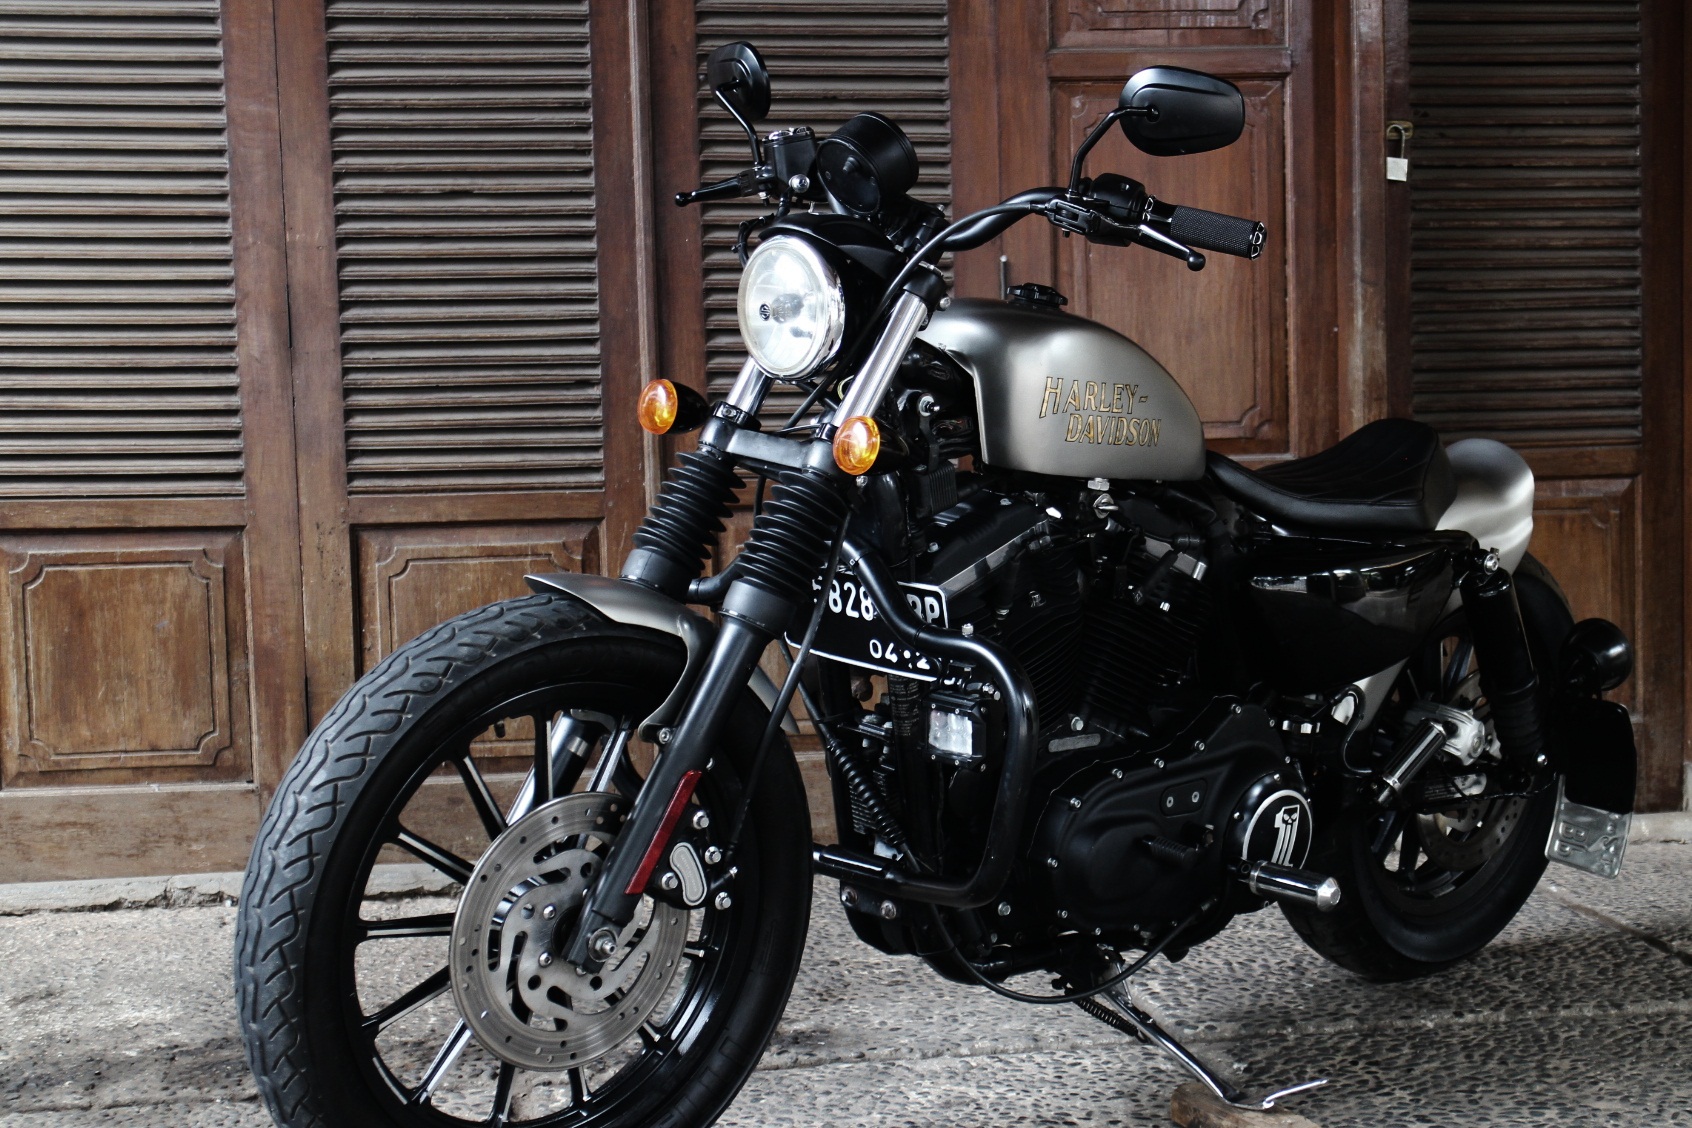 Bikin Tampilan Harley Sportster Makin Gahar Dengan Komponen Dari